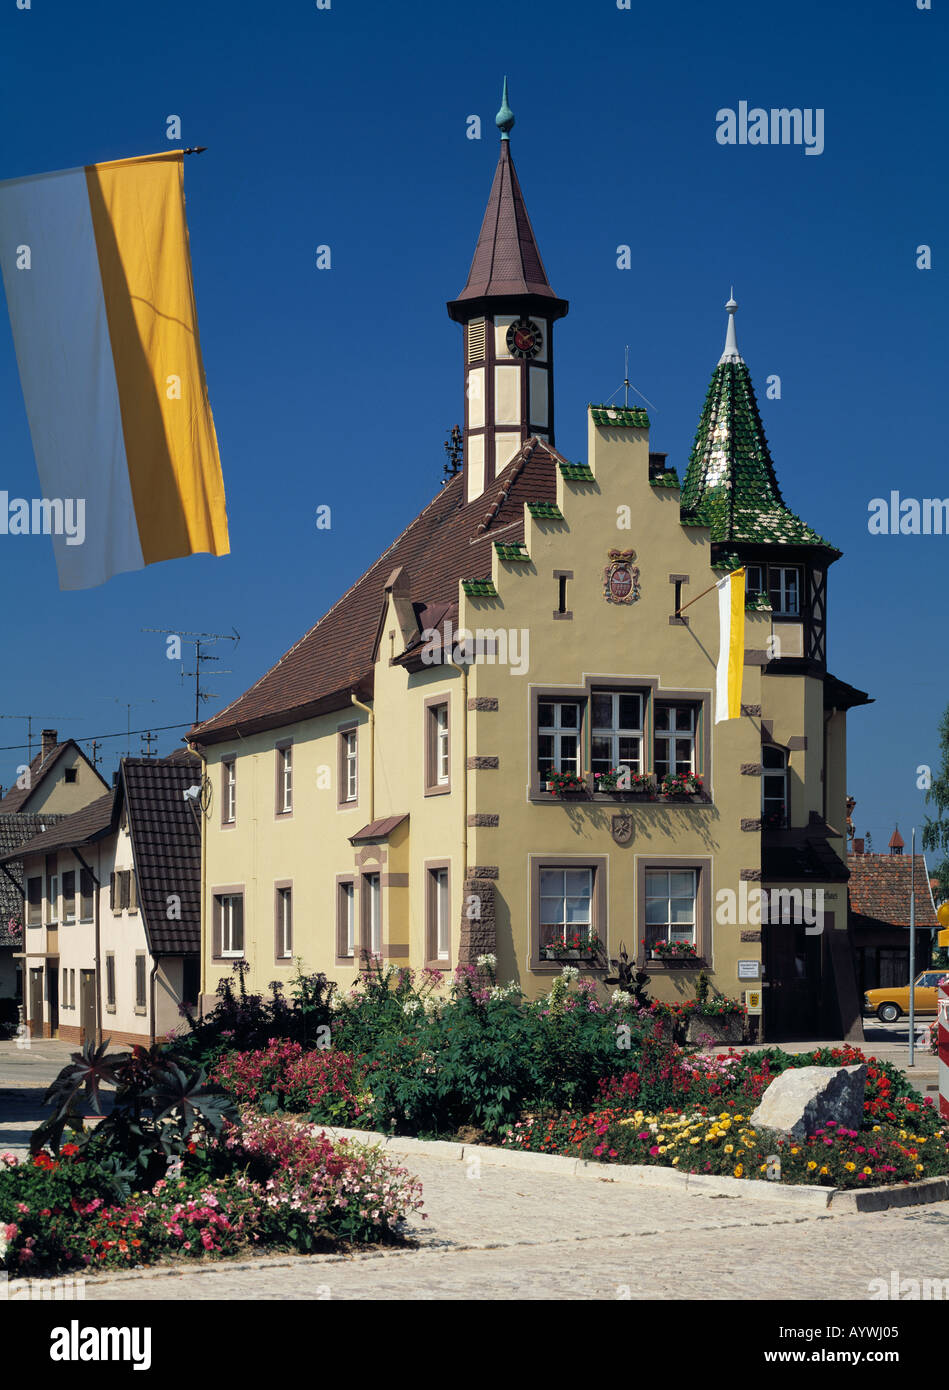 Rathaus mit Ziertuermen und Stufengiebel, Flagge, Blumenbeete, Heitersheim, Markgraefler Land, Baden-Wuerttemberg Stock Photo